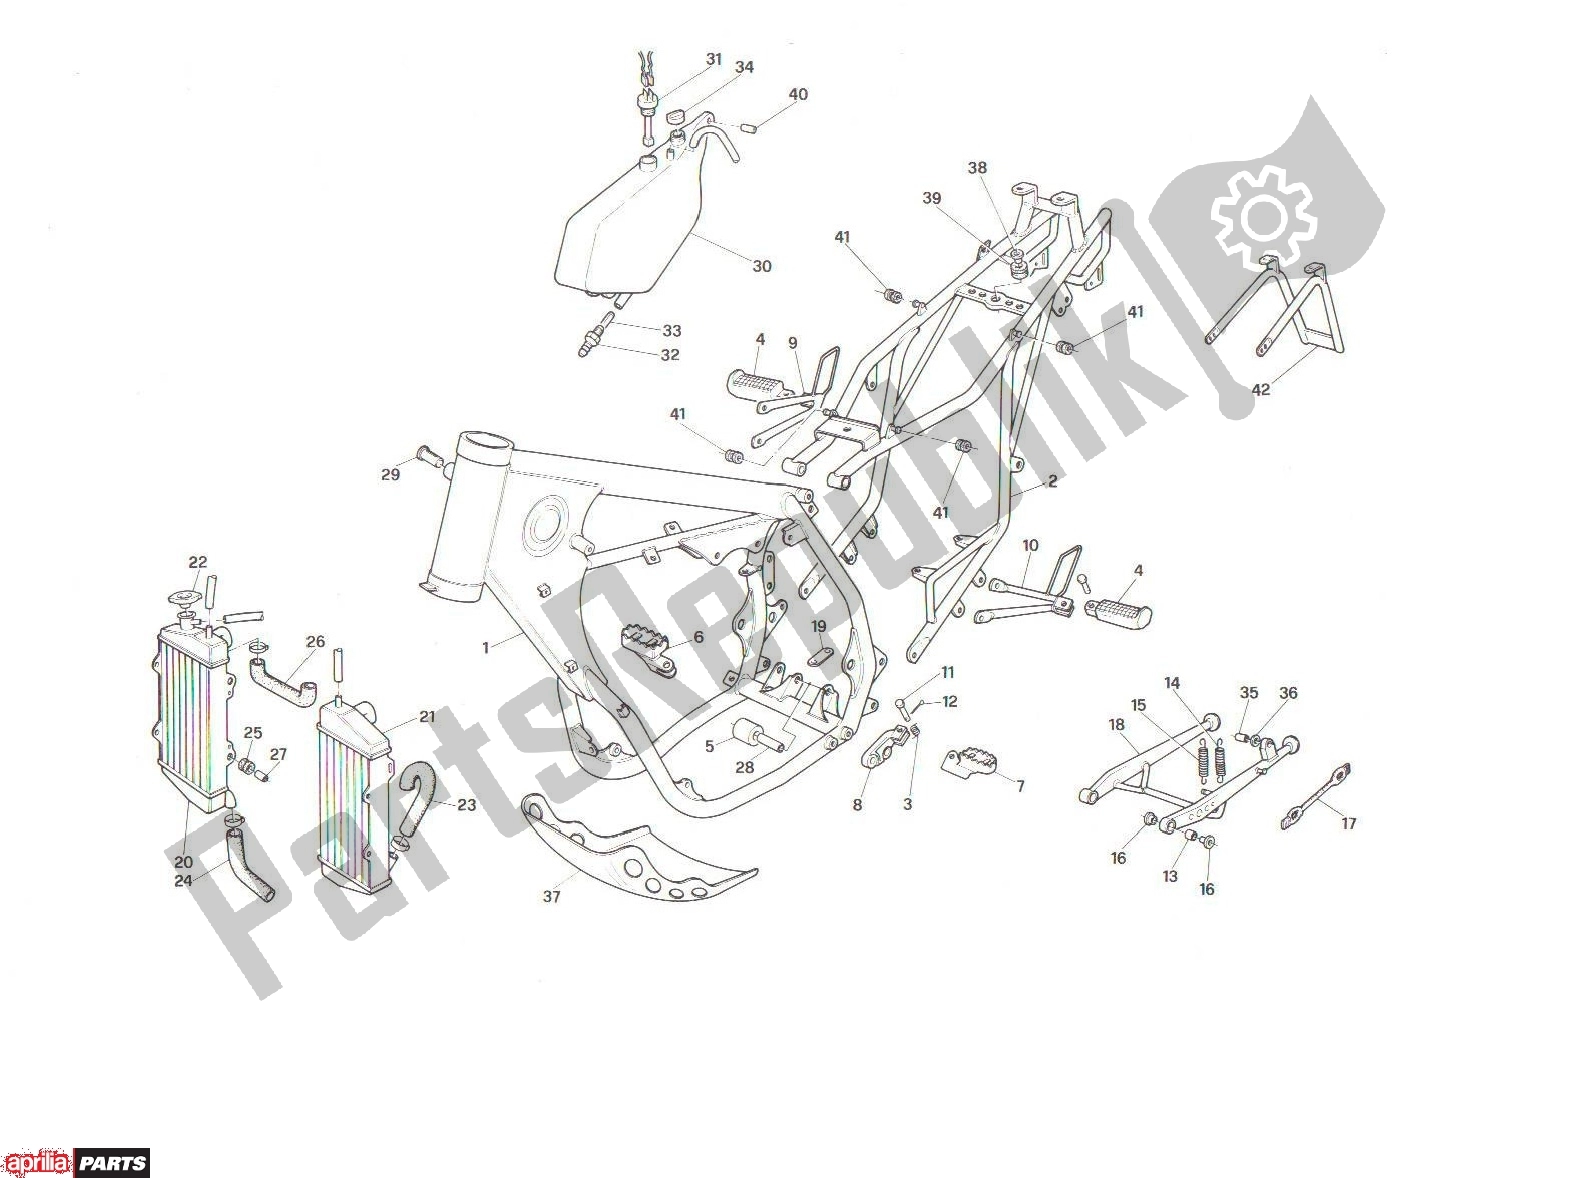 Alle onderdelen voor de Frame van de Aprilia RX 101 125 1989